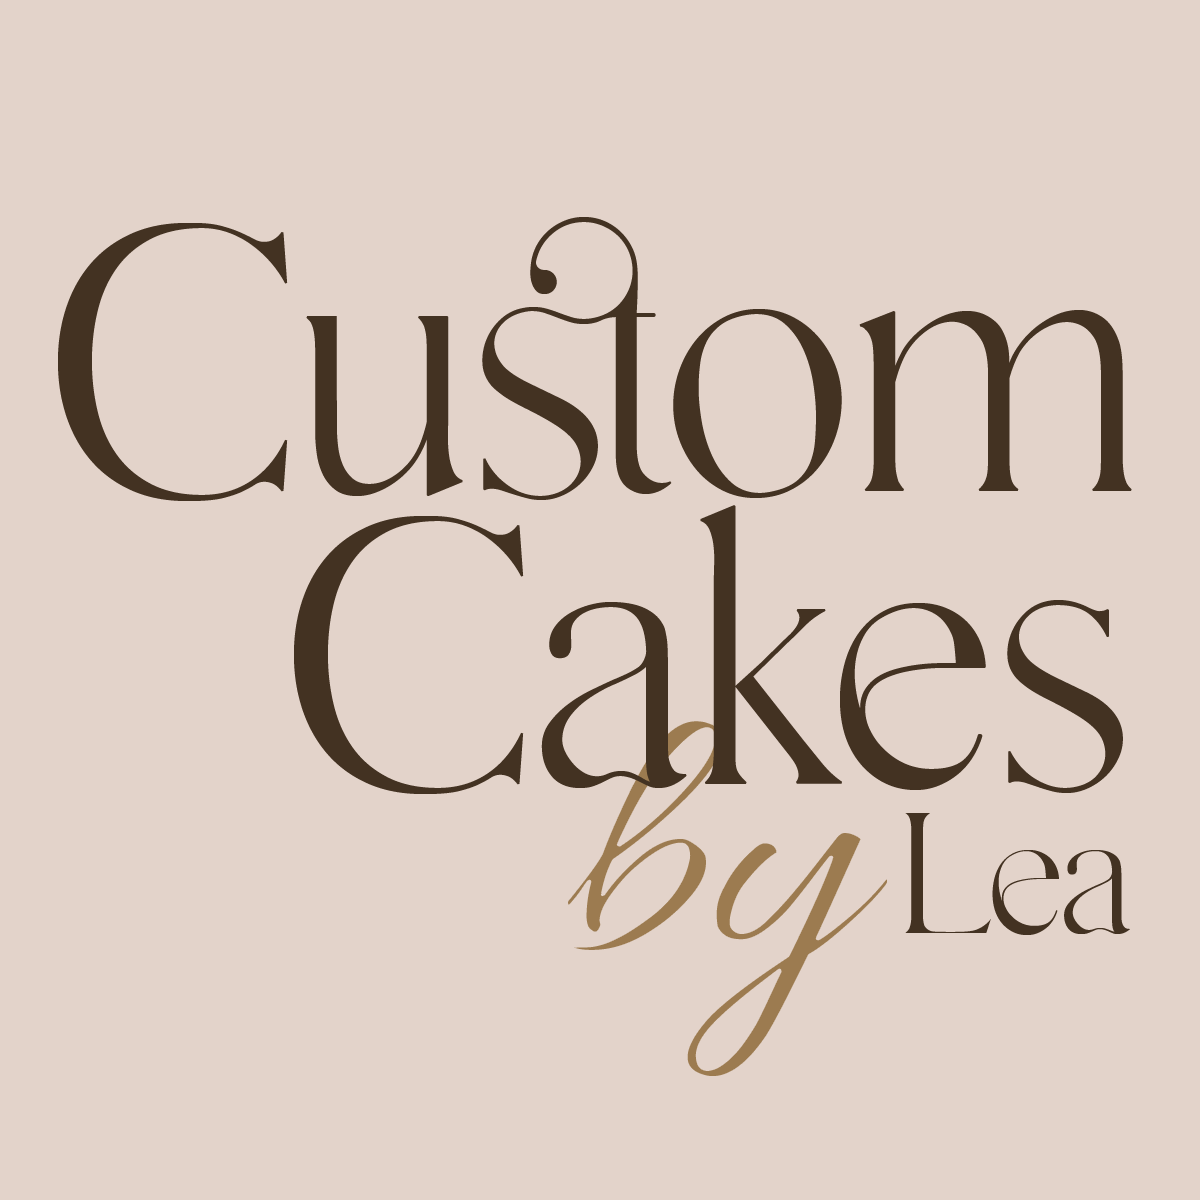 Custom cakes by Lea